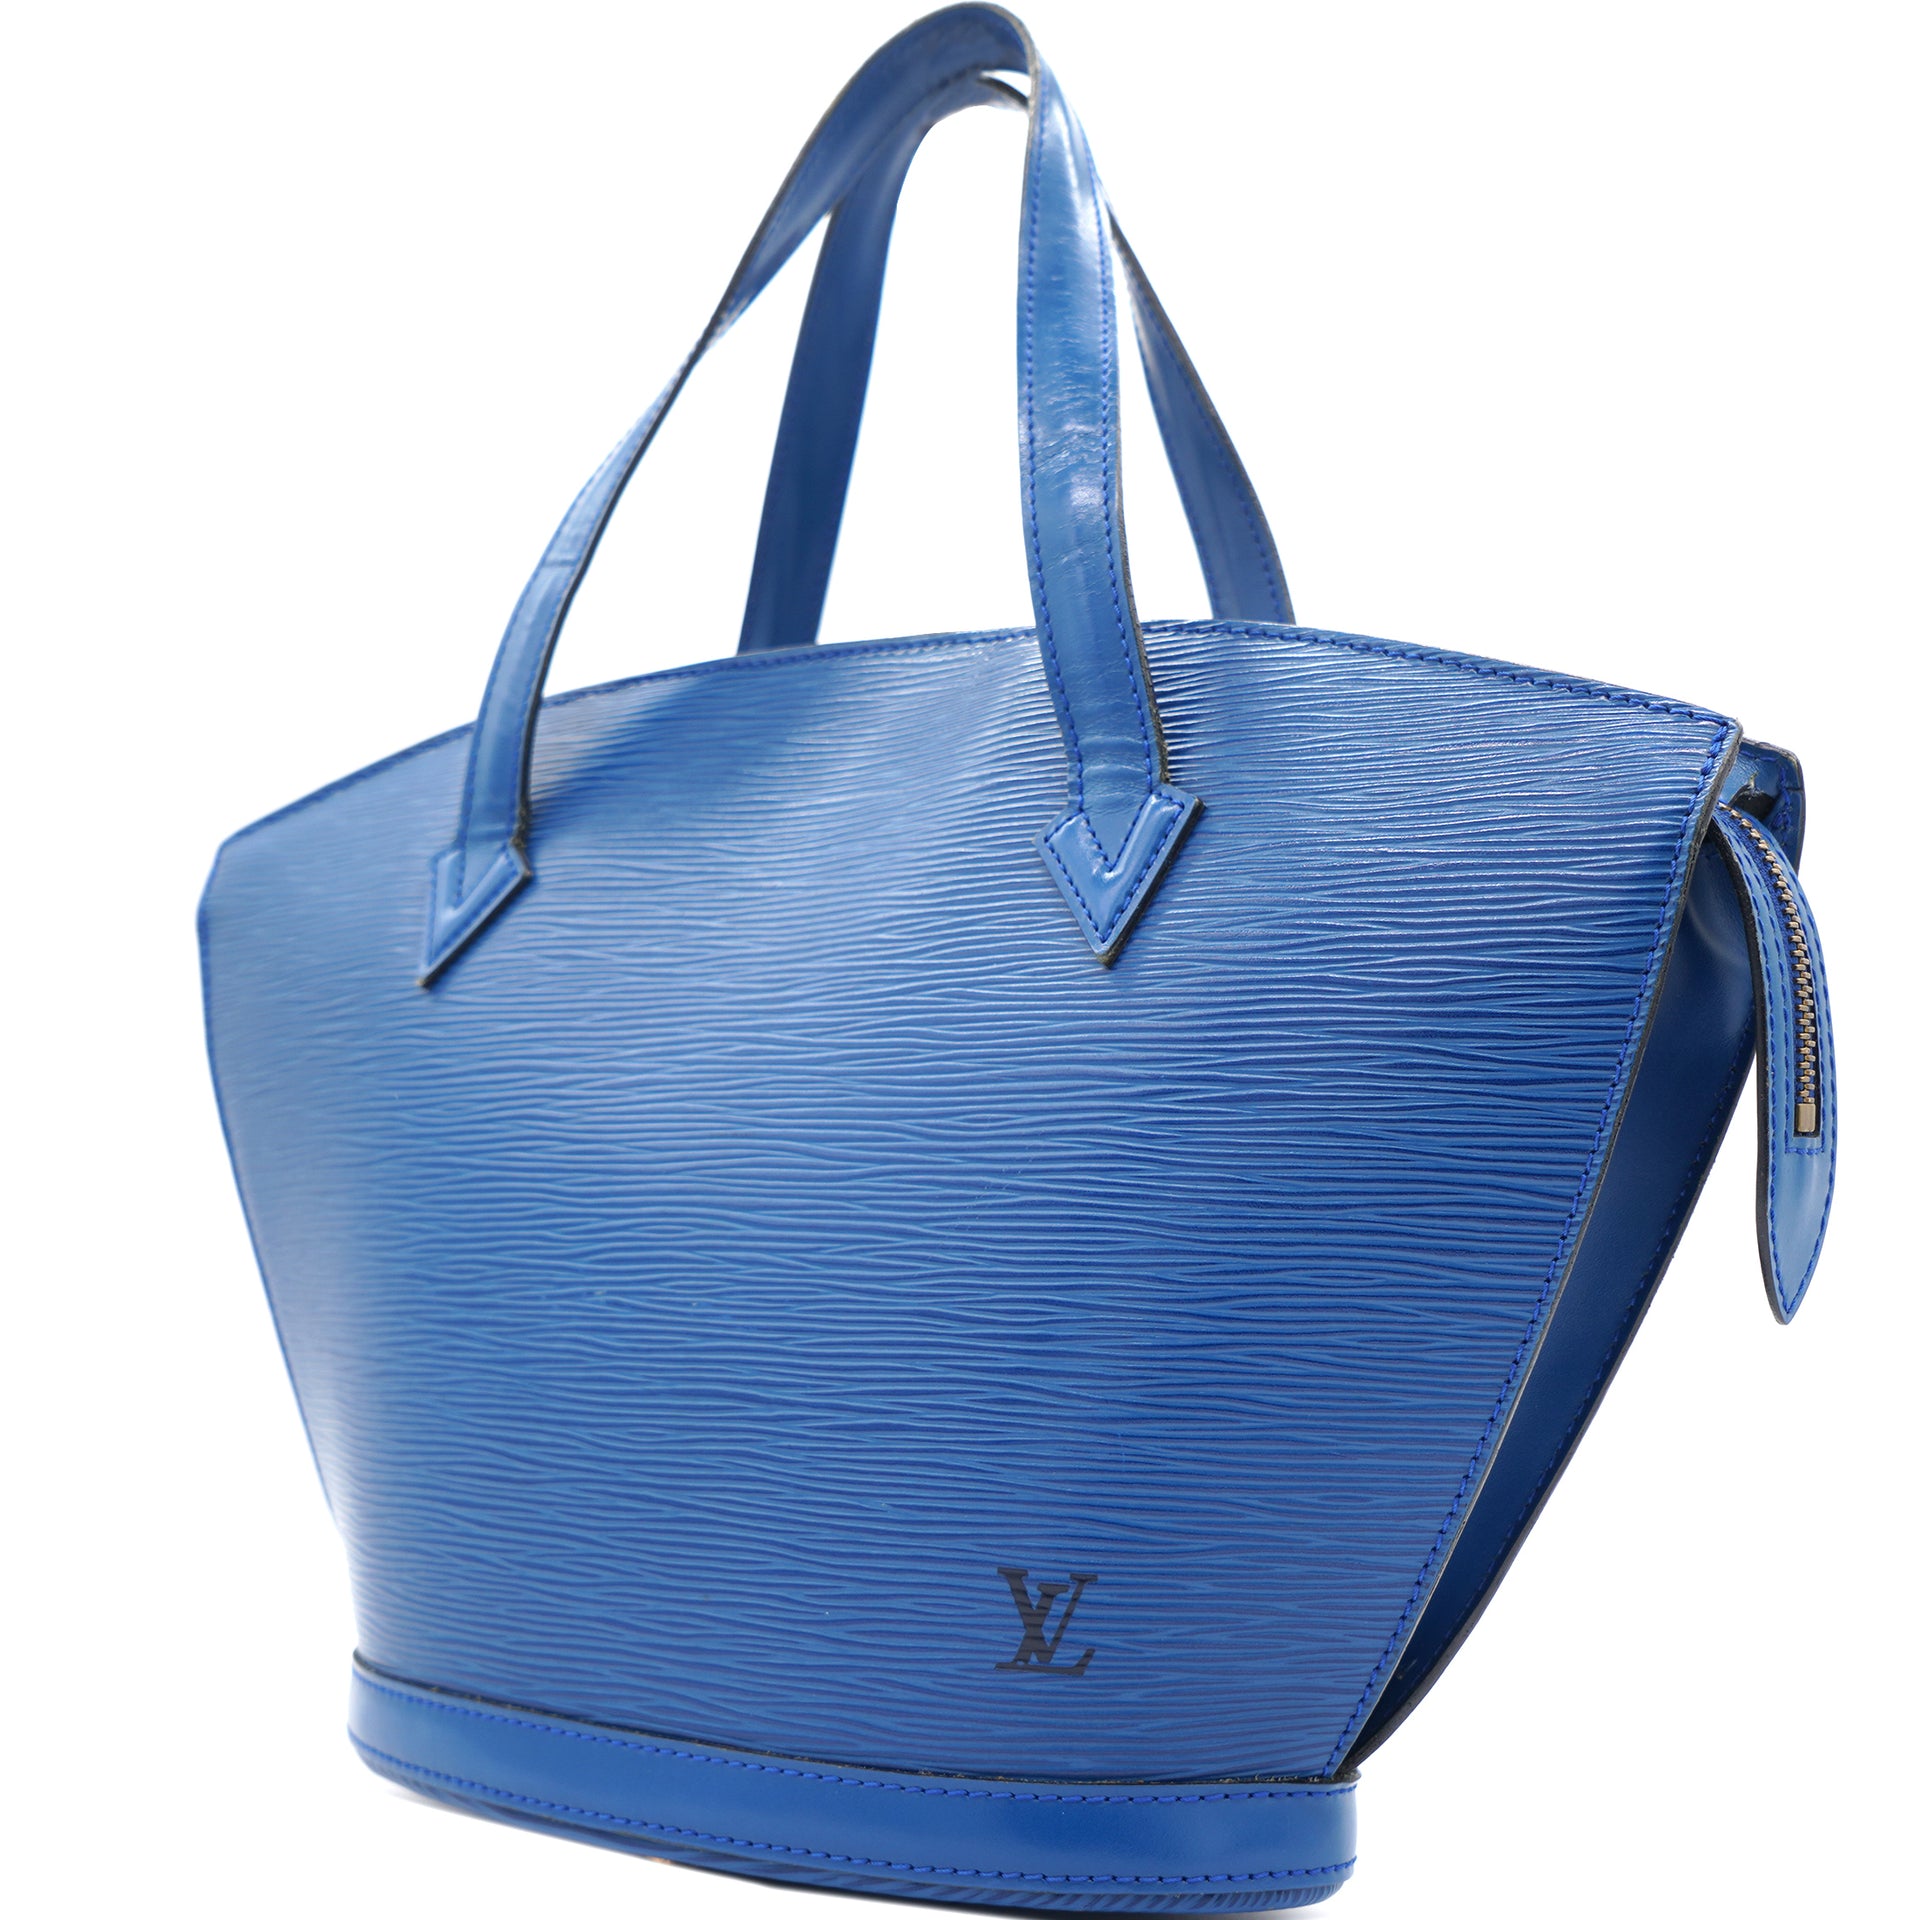 Louis Vuitton Saint Jacques Epi Leather Top Handle Bag on SALE